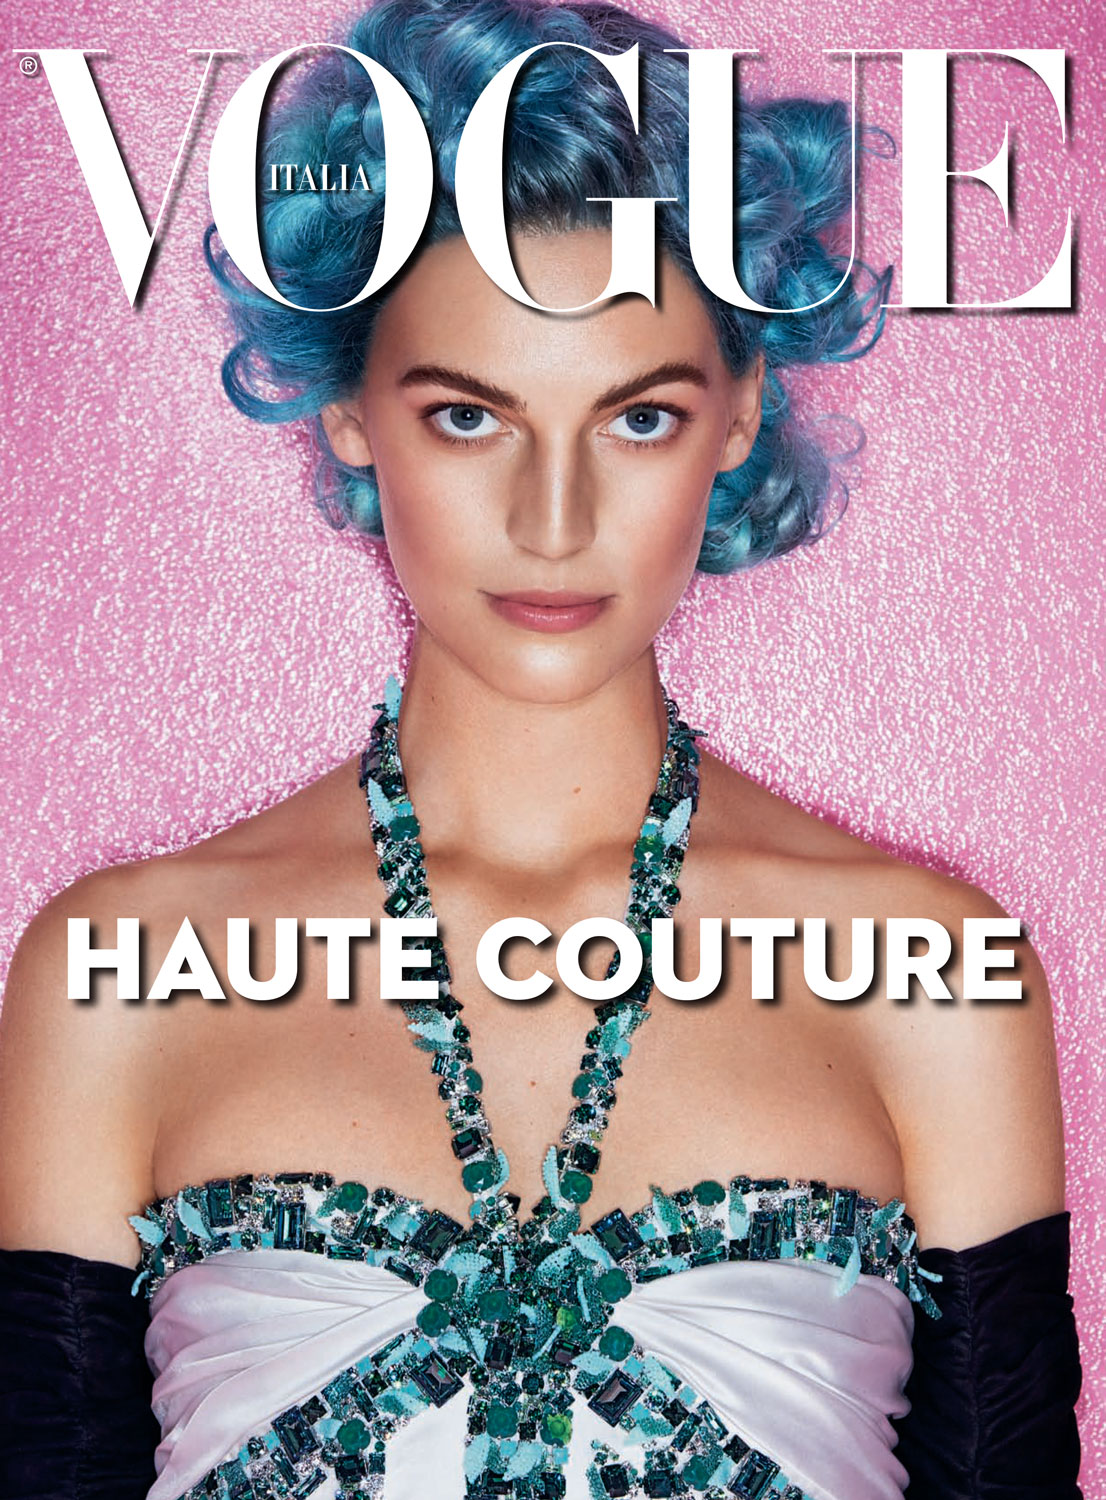 SH Vogue Italia Sept 16 1